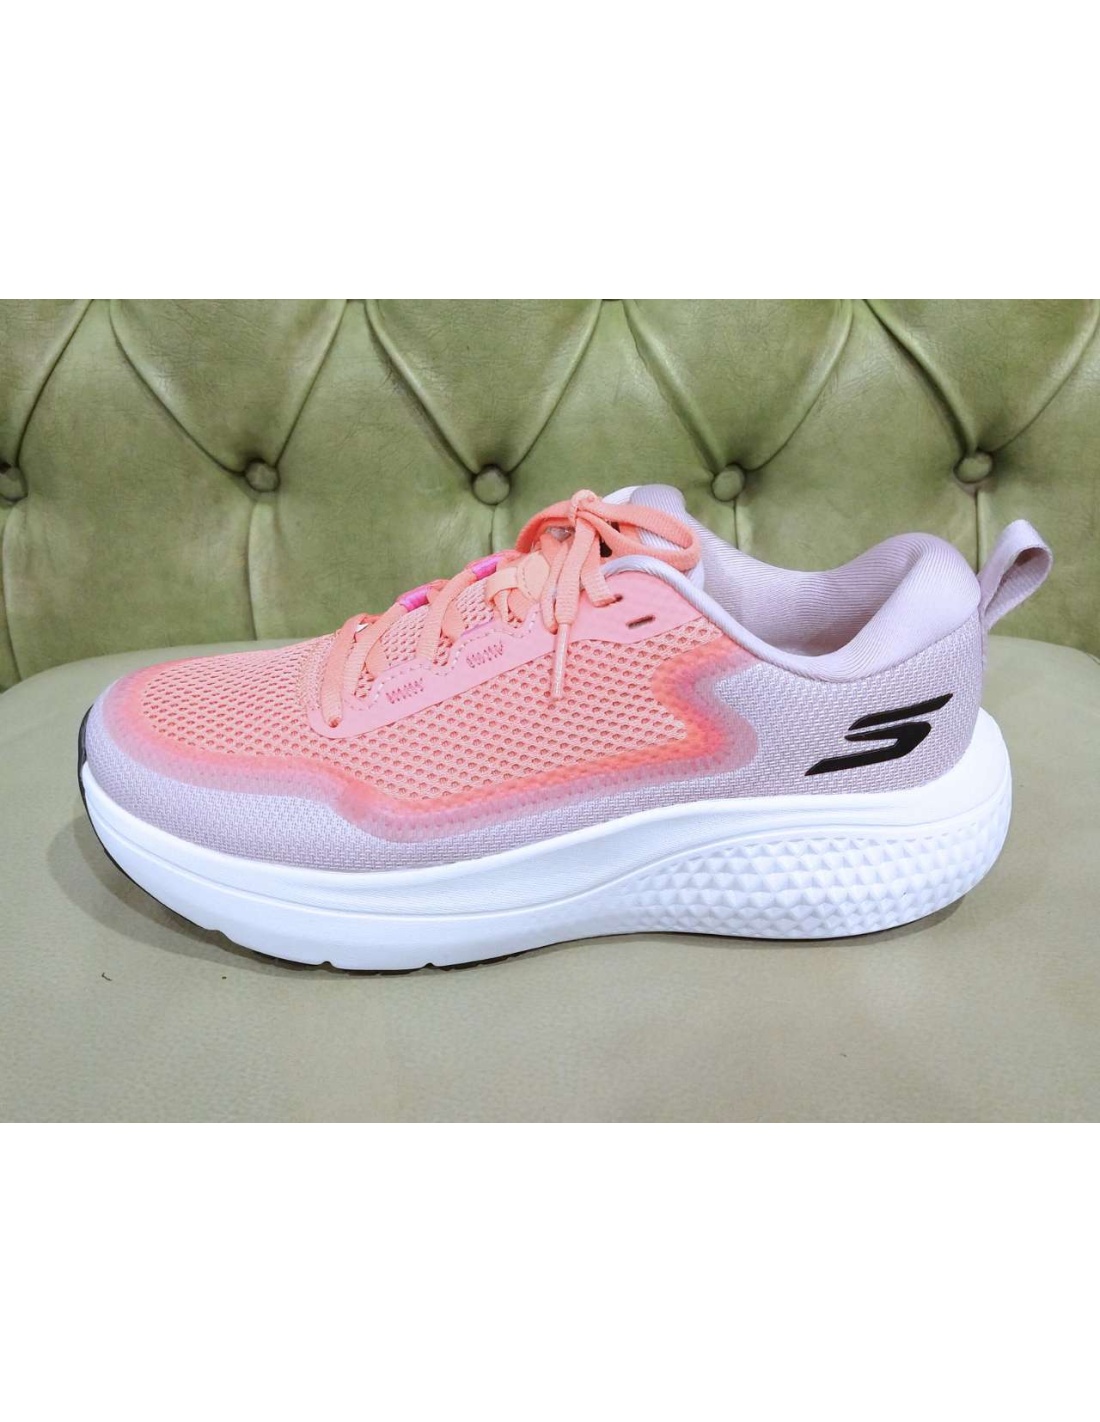 Skechers Go Flex Walking Shoes for Girls (Pink) - 28.5 EU